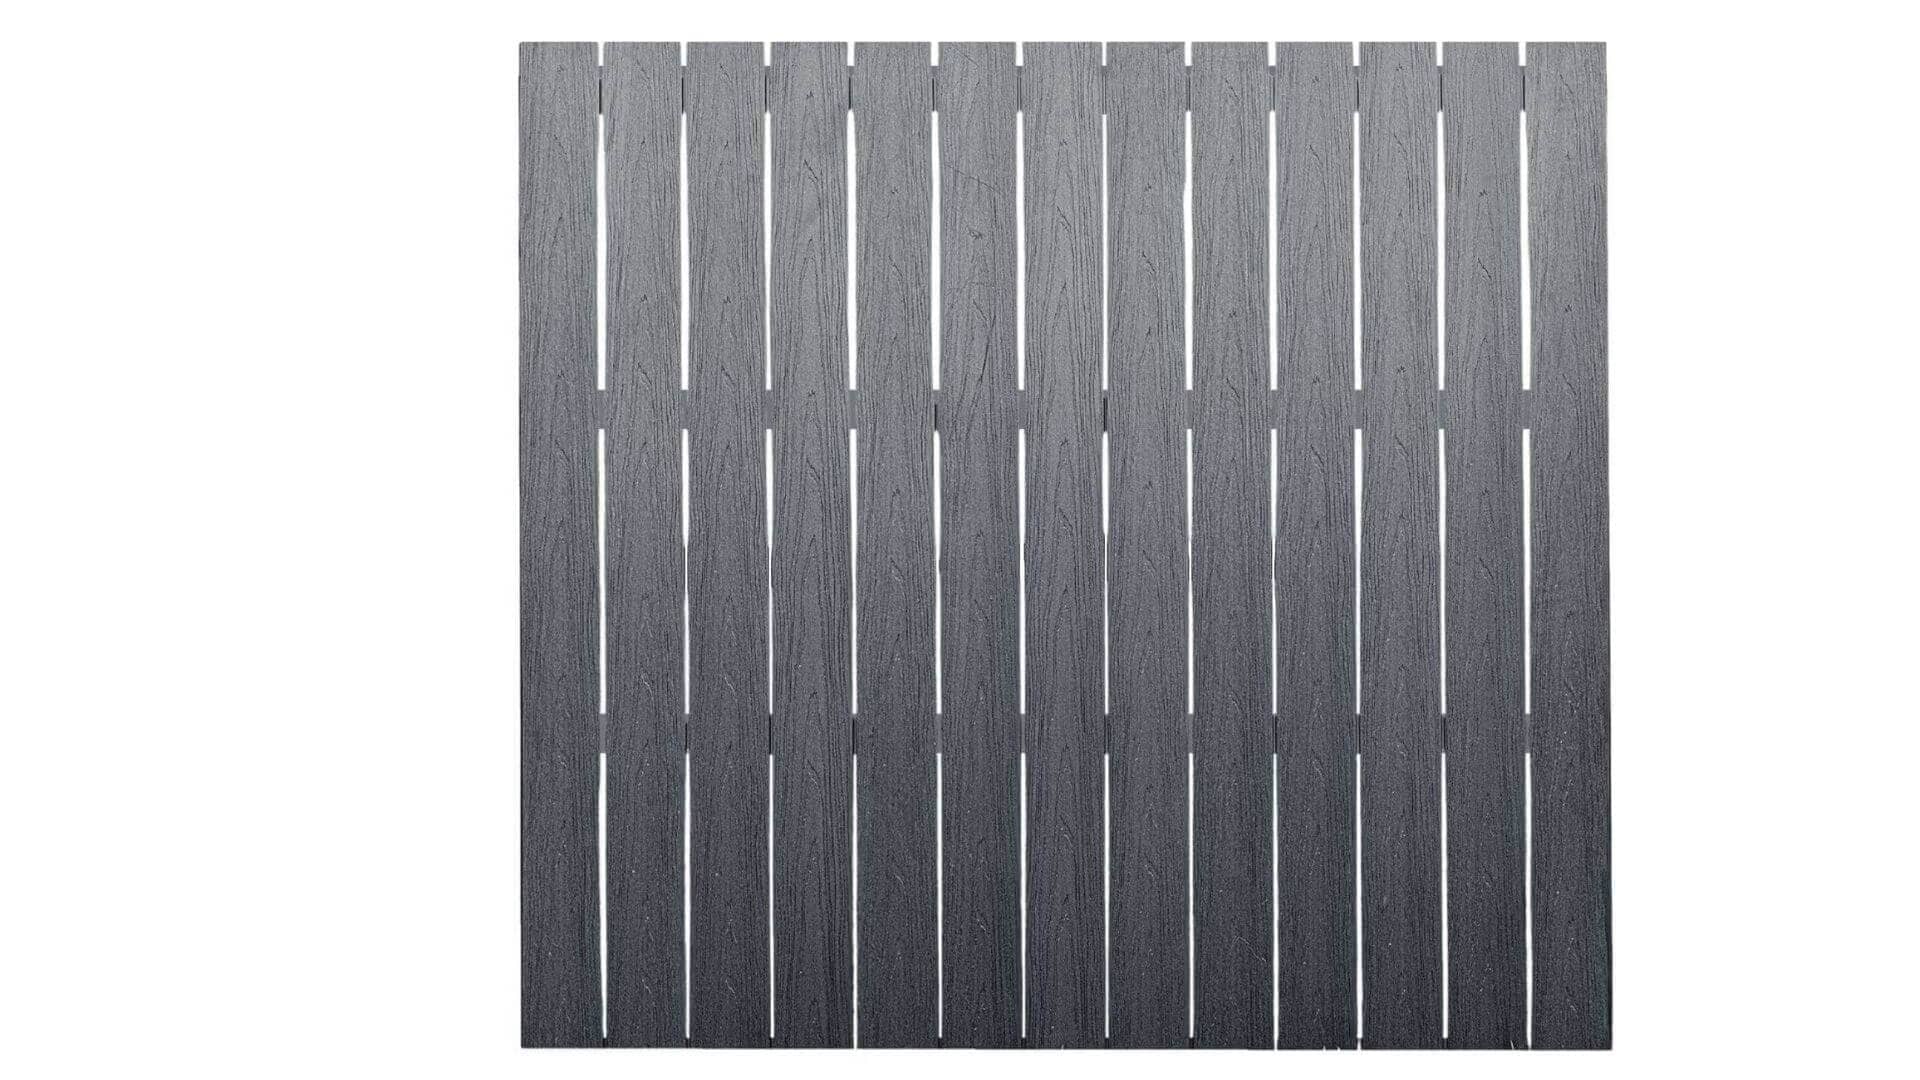 Cap Composite Pre-Assembled Fence Panels